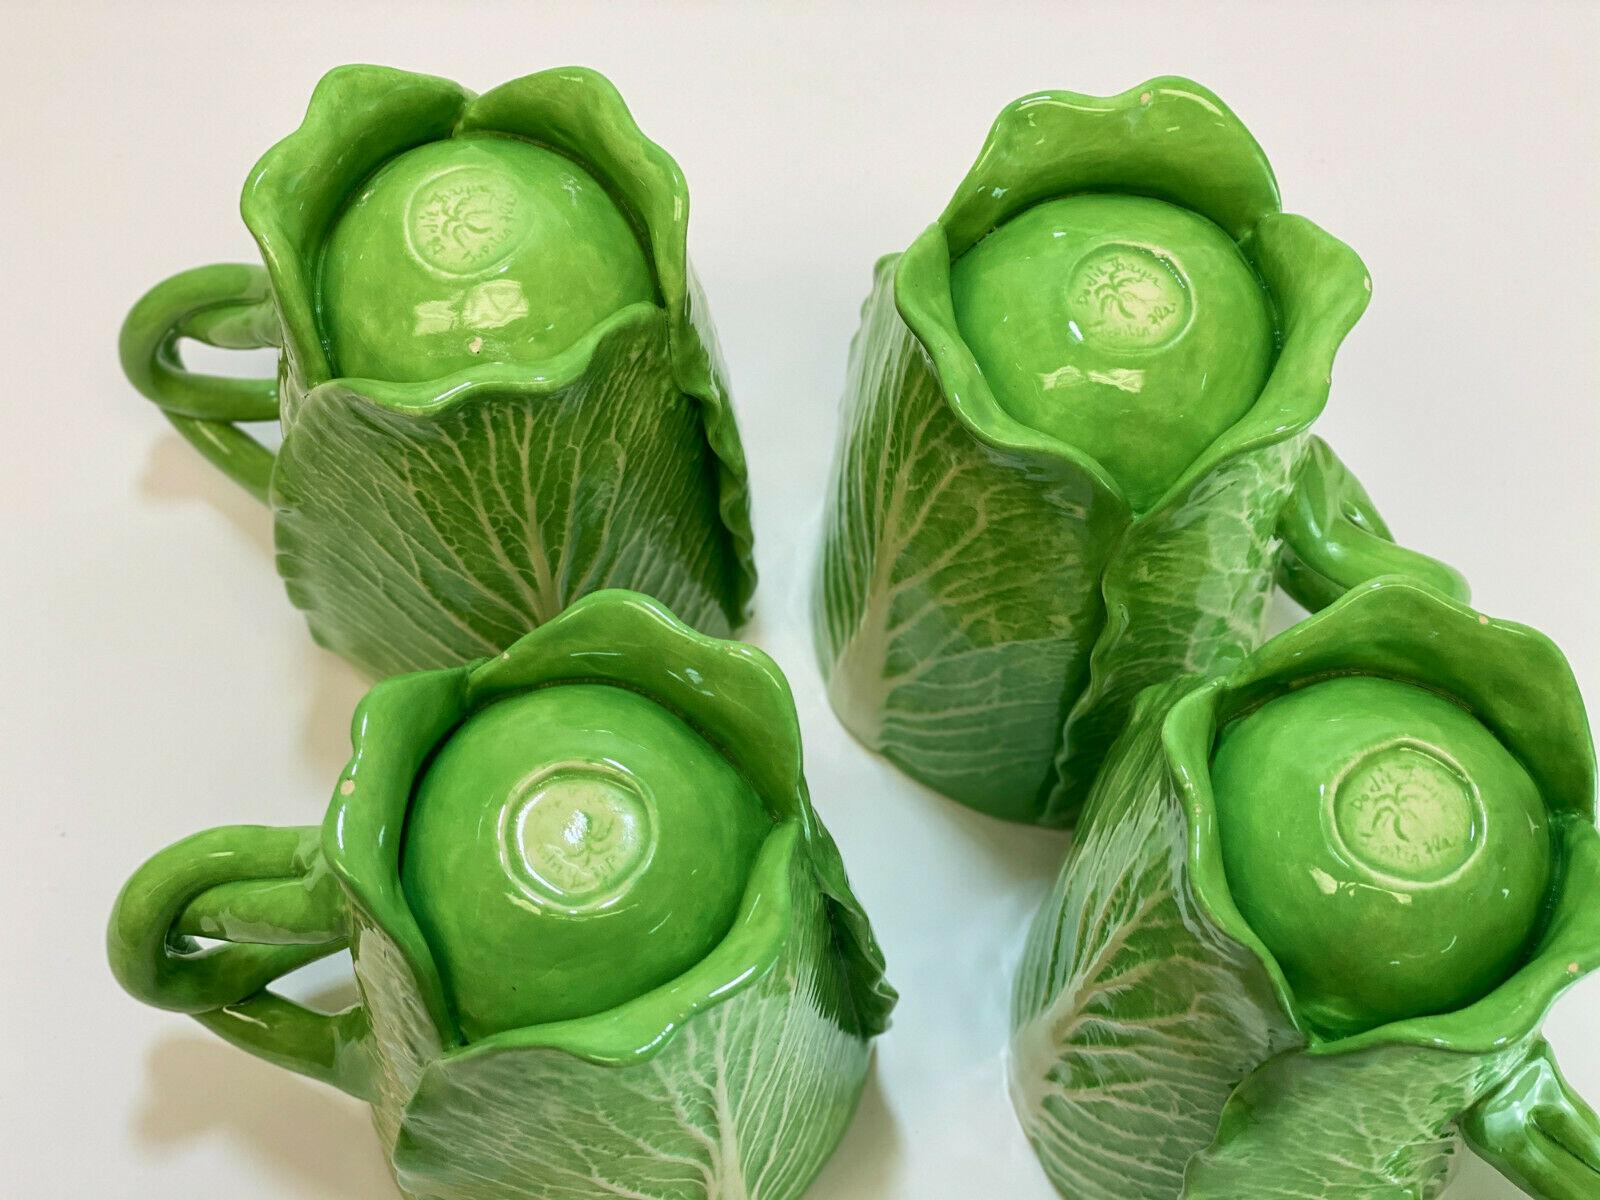 Description: 4 Dodie Thayer Jupiter lettuce leaf earthenware porcelain handcrafted mugs. Signed 